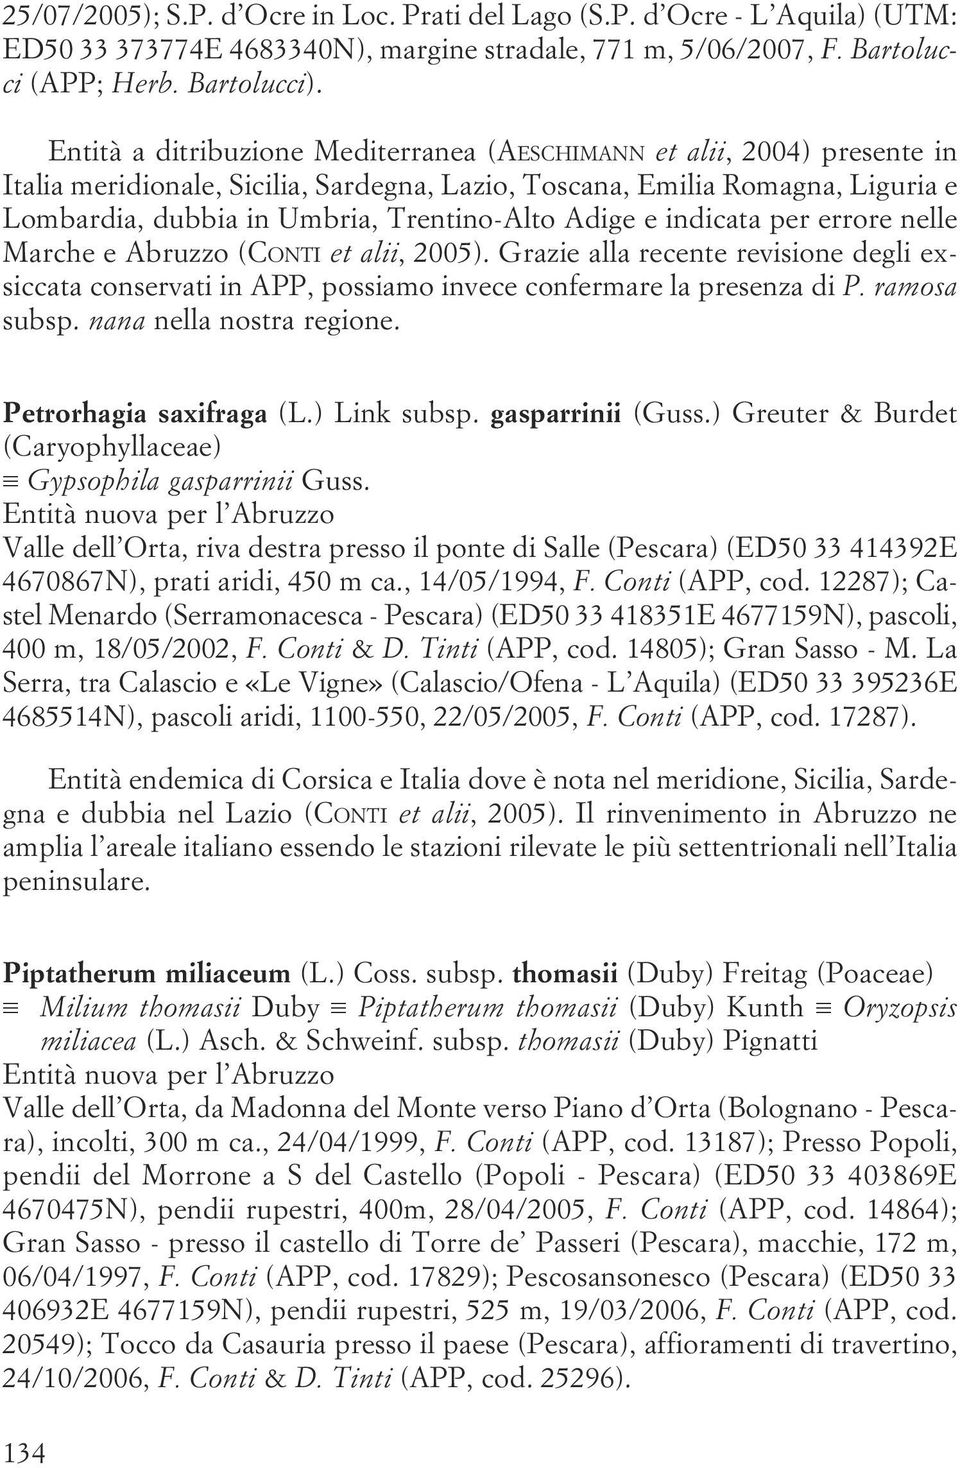 errore nelle Marche e Abruzzo (CONTI et alii, 2005) Grazie alla recente revisione degli exsiccata conservati in APP, possiamo invece confermare la presenza di P ramosa subsp nana nella nostra regione